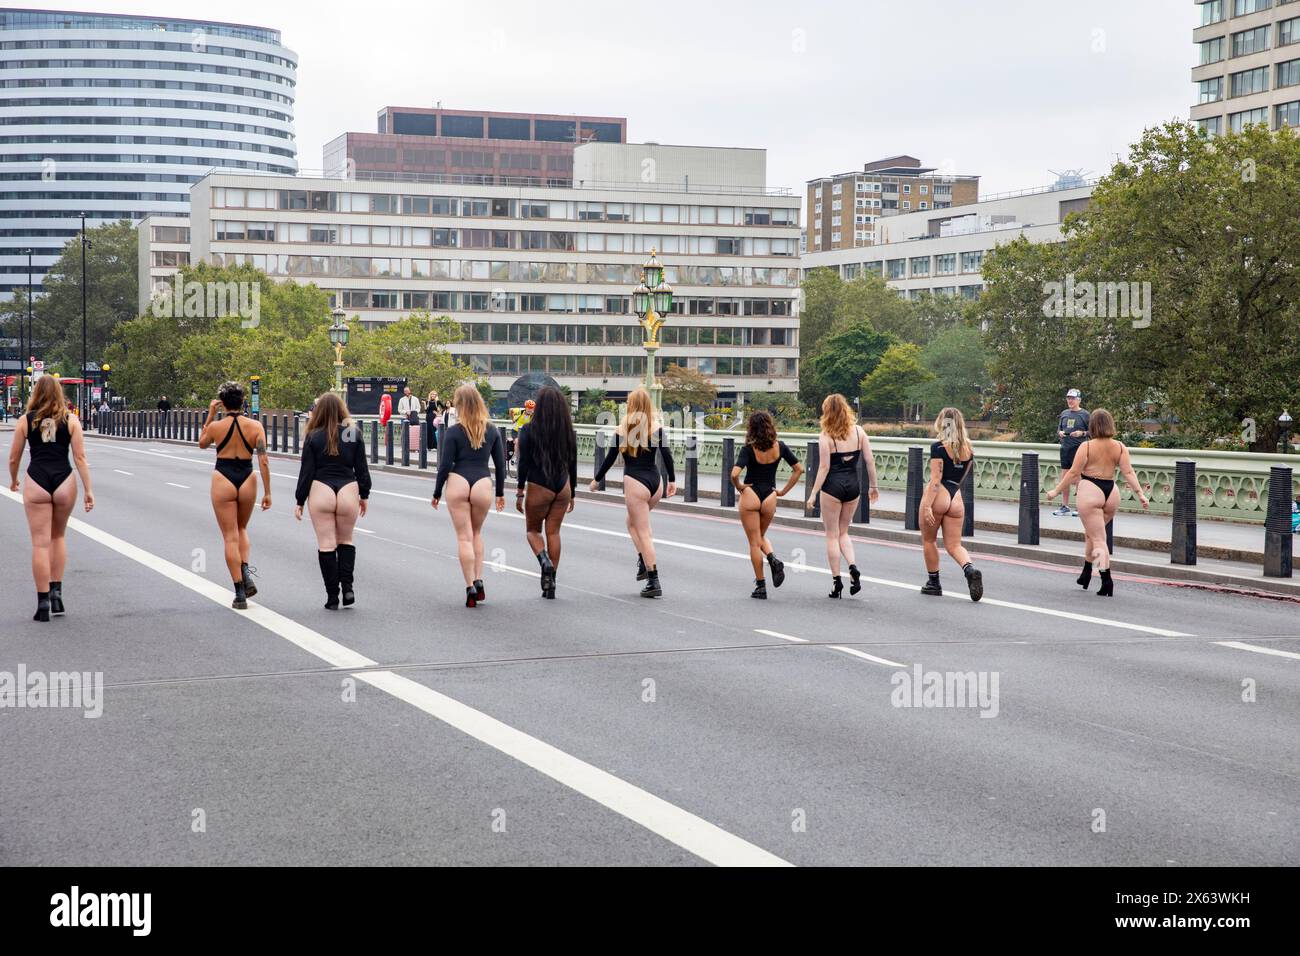 Vue arrière des filles en léotards noirs marchent le long du pont Westminster Londres vers l'hôpital universitaire St Thomas's NHS, les femmes protestent / pouvoir, Londres Banque D'Images